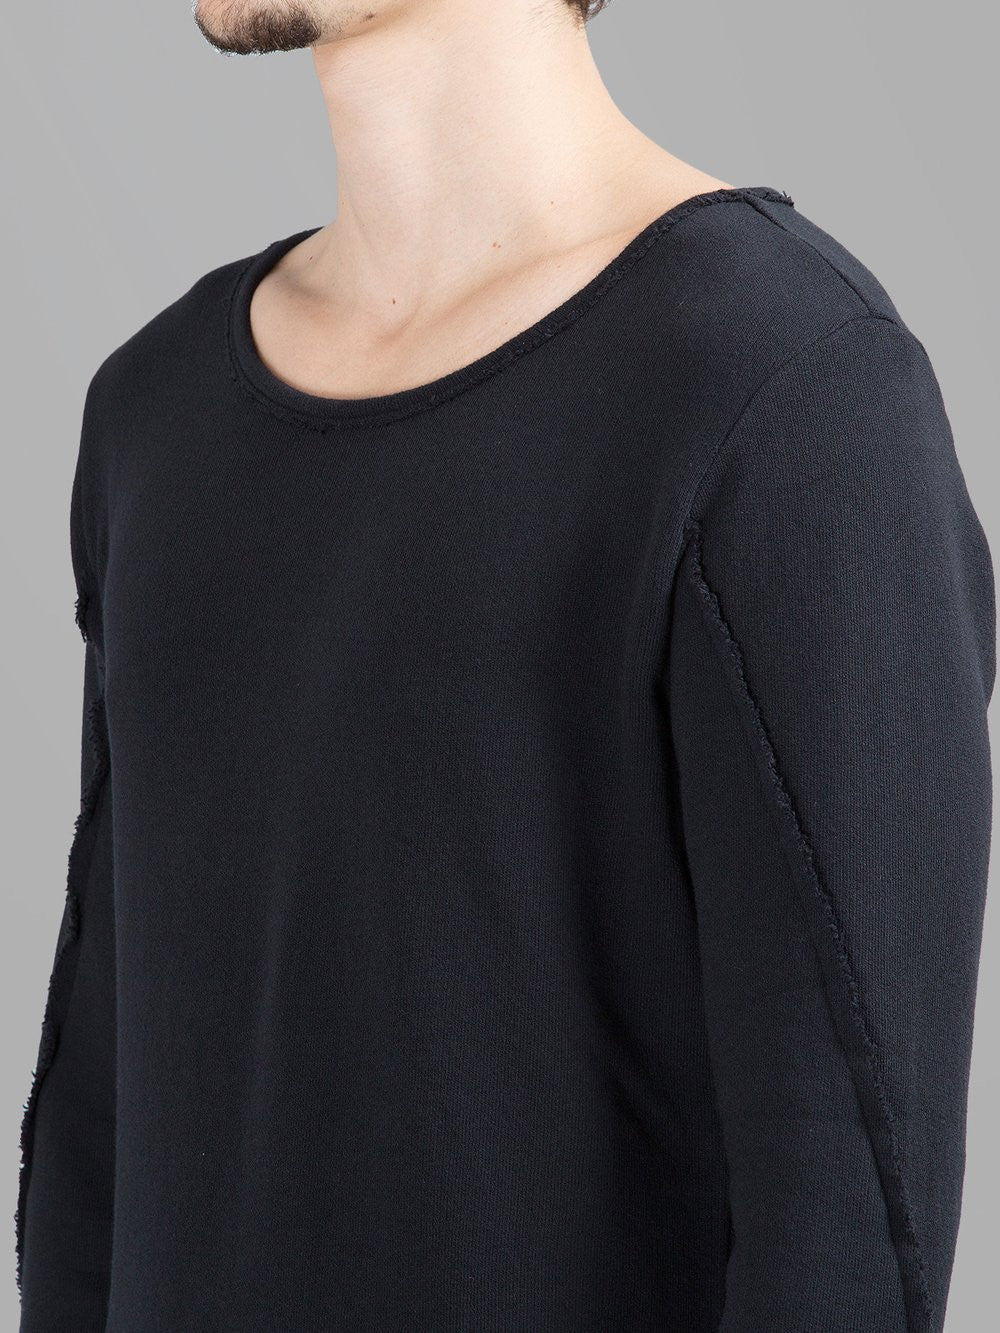 Men's Wide Round Neck Asymmetric Raw Cut Seam Sweatshirt